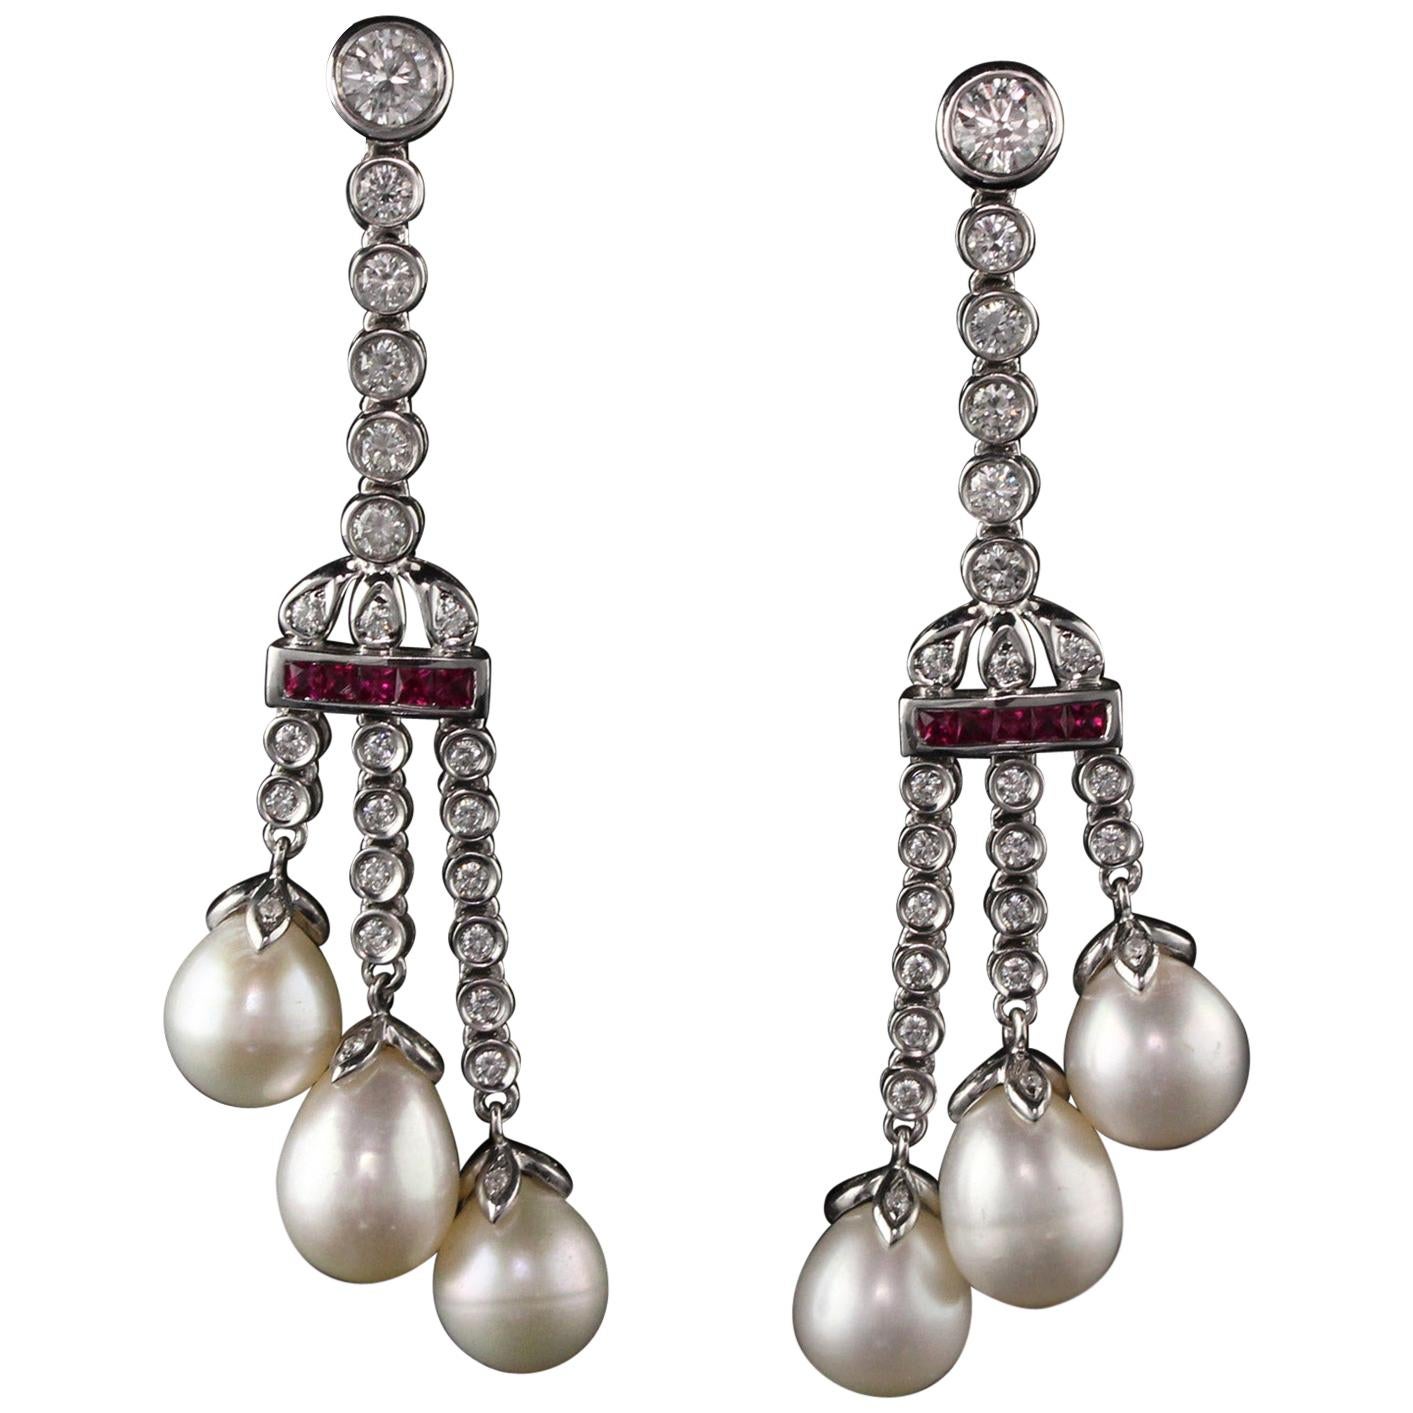 Boucles d'oreilles anciennes en or blanc 18 carats avec diamants, rubis et perles